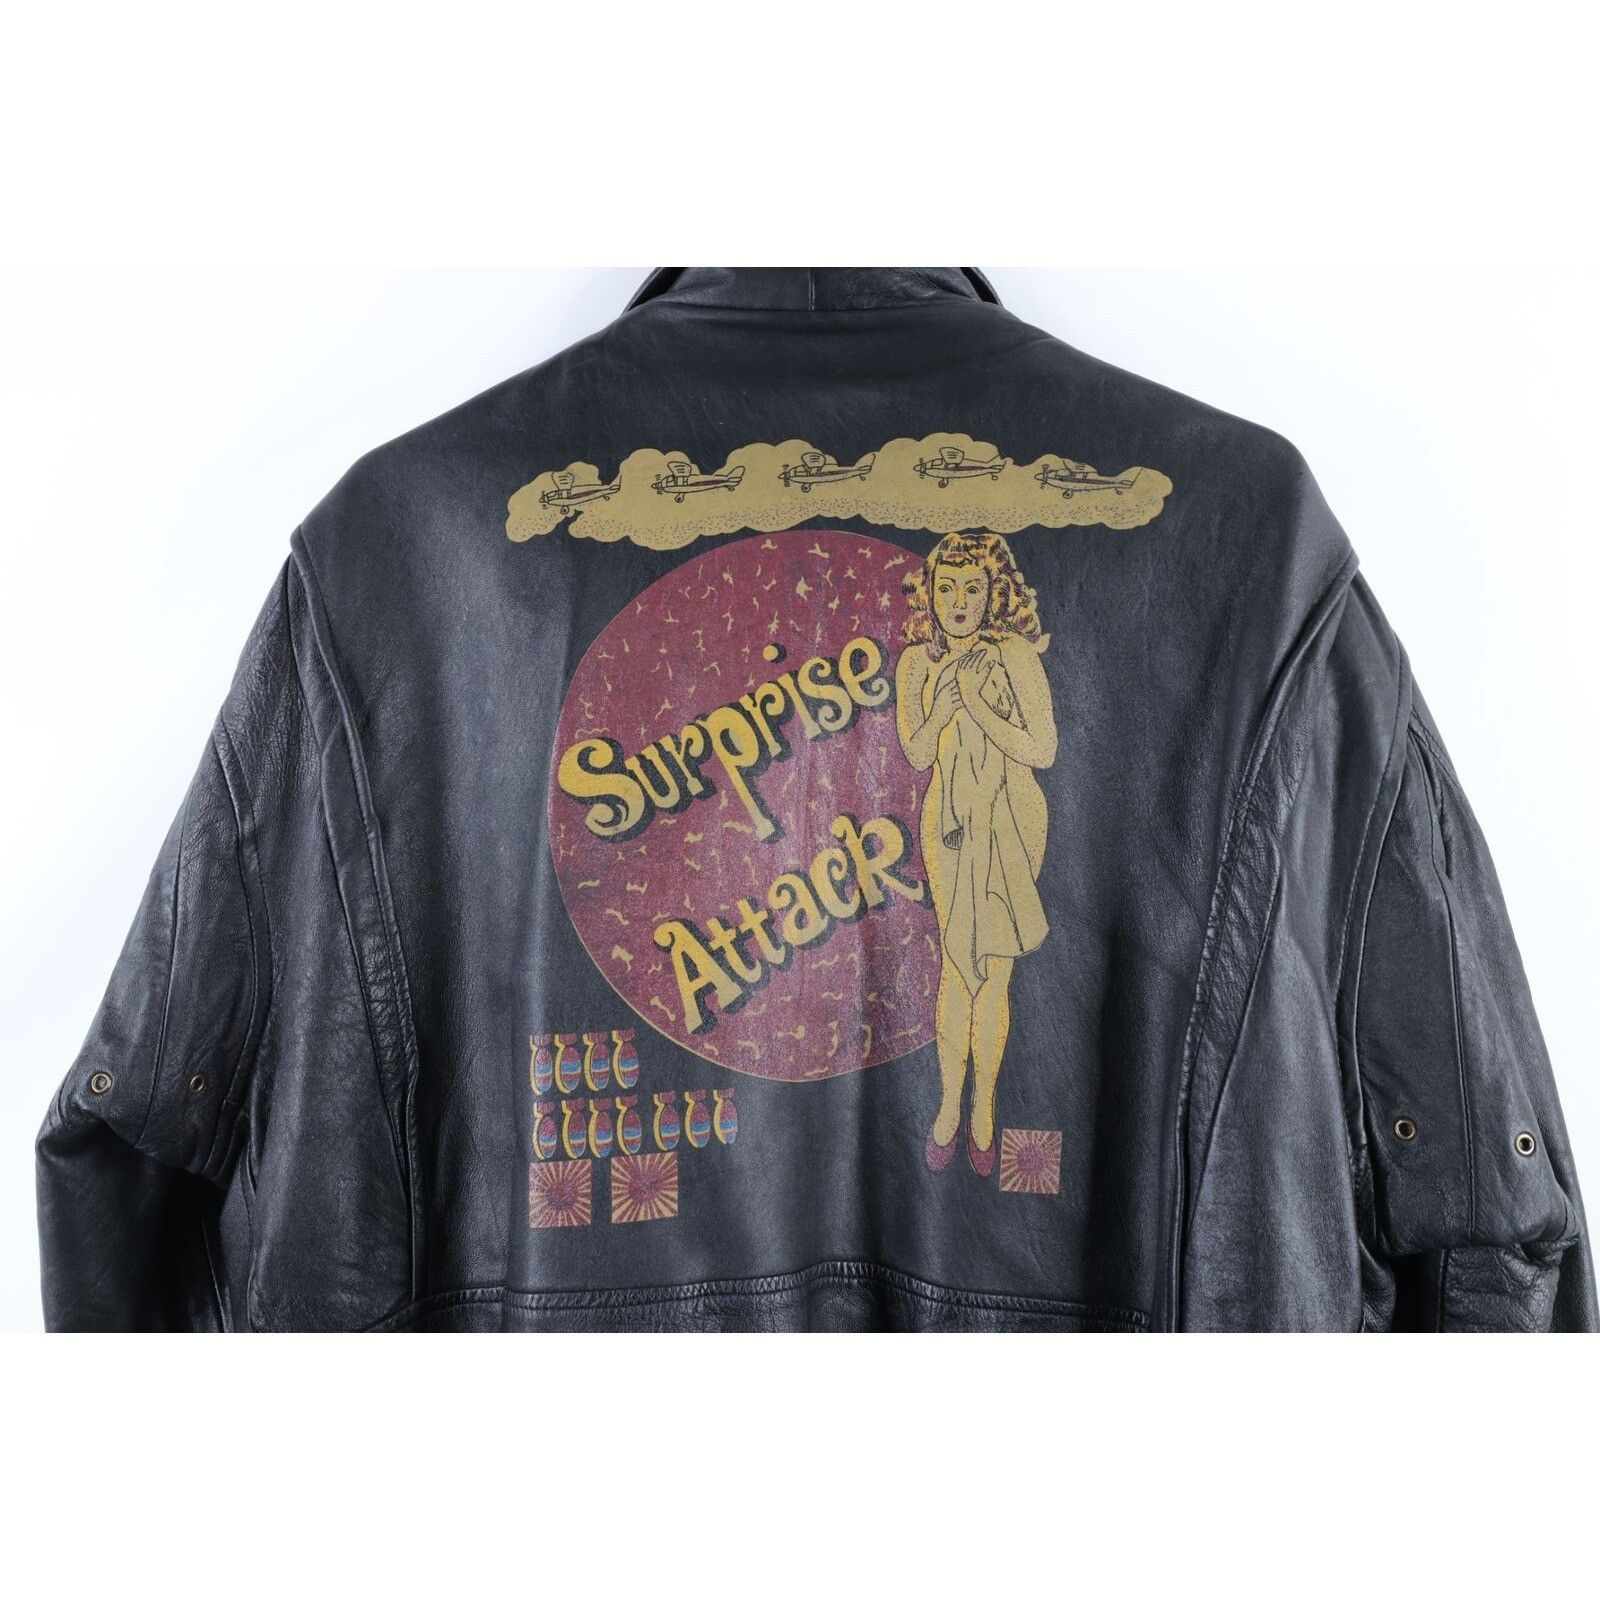 Vintage Vintage Surprise Attack Nuke Japan Souvenir Leather Jacket Size US M / EU 48-50 / 2 - 10 Preview